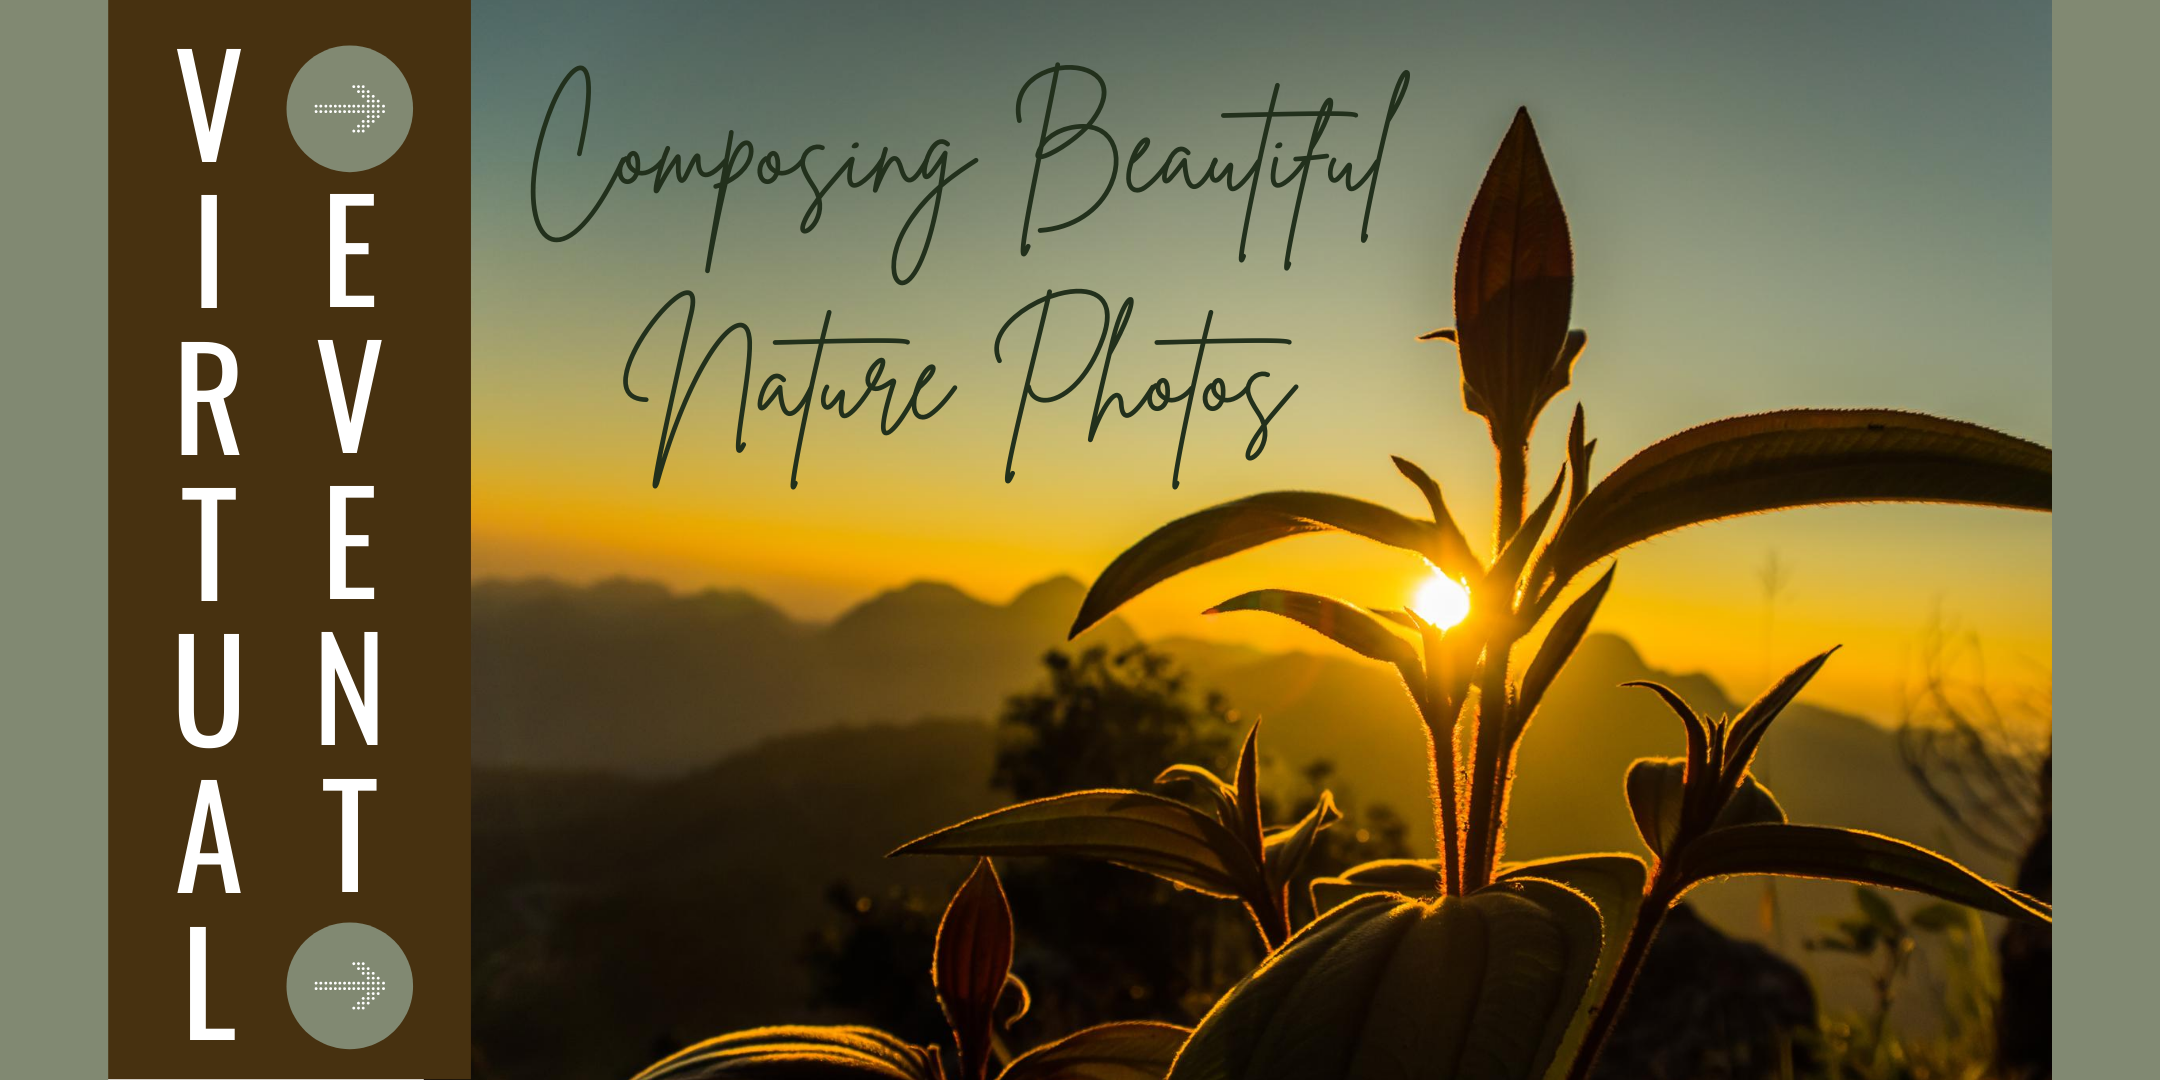 Composing Beautiful Nature Photos image